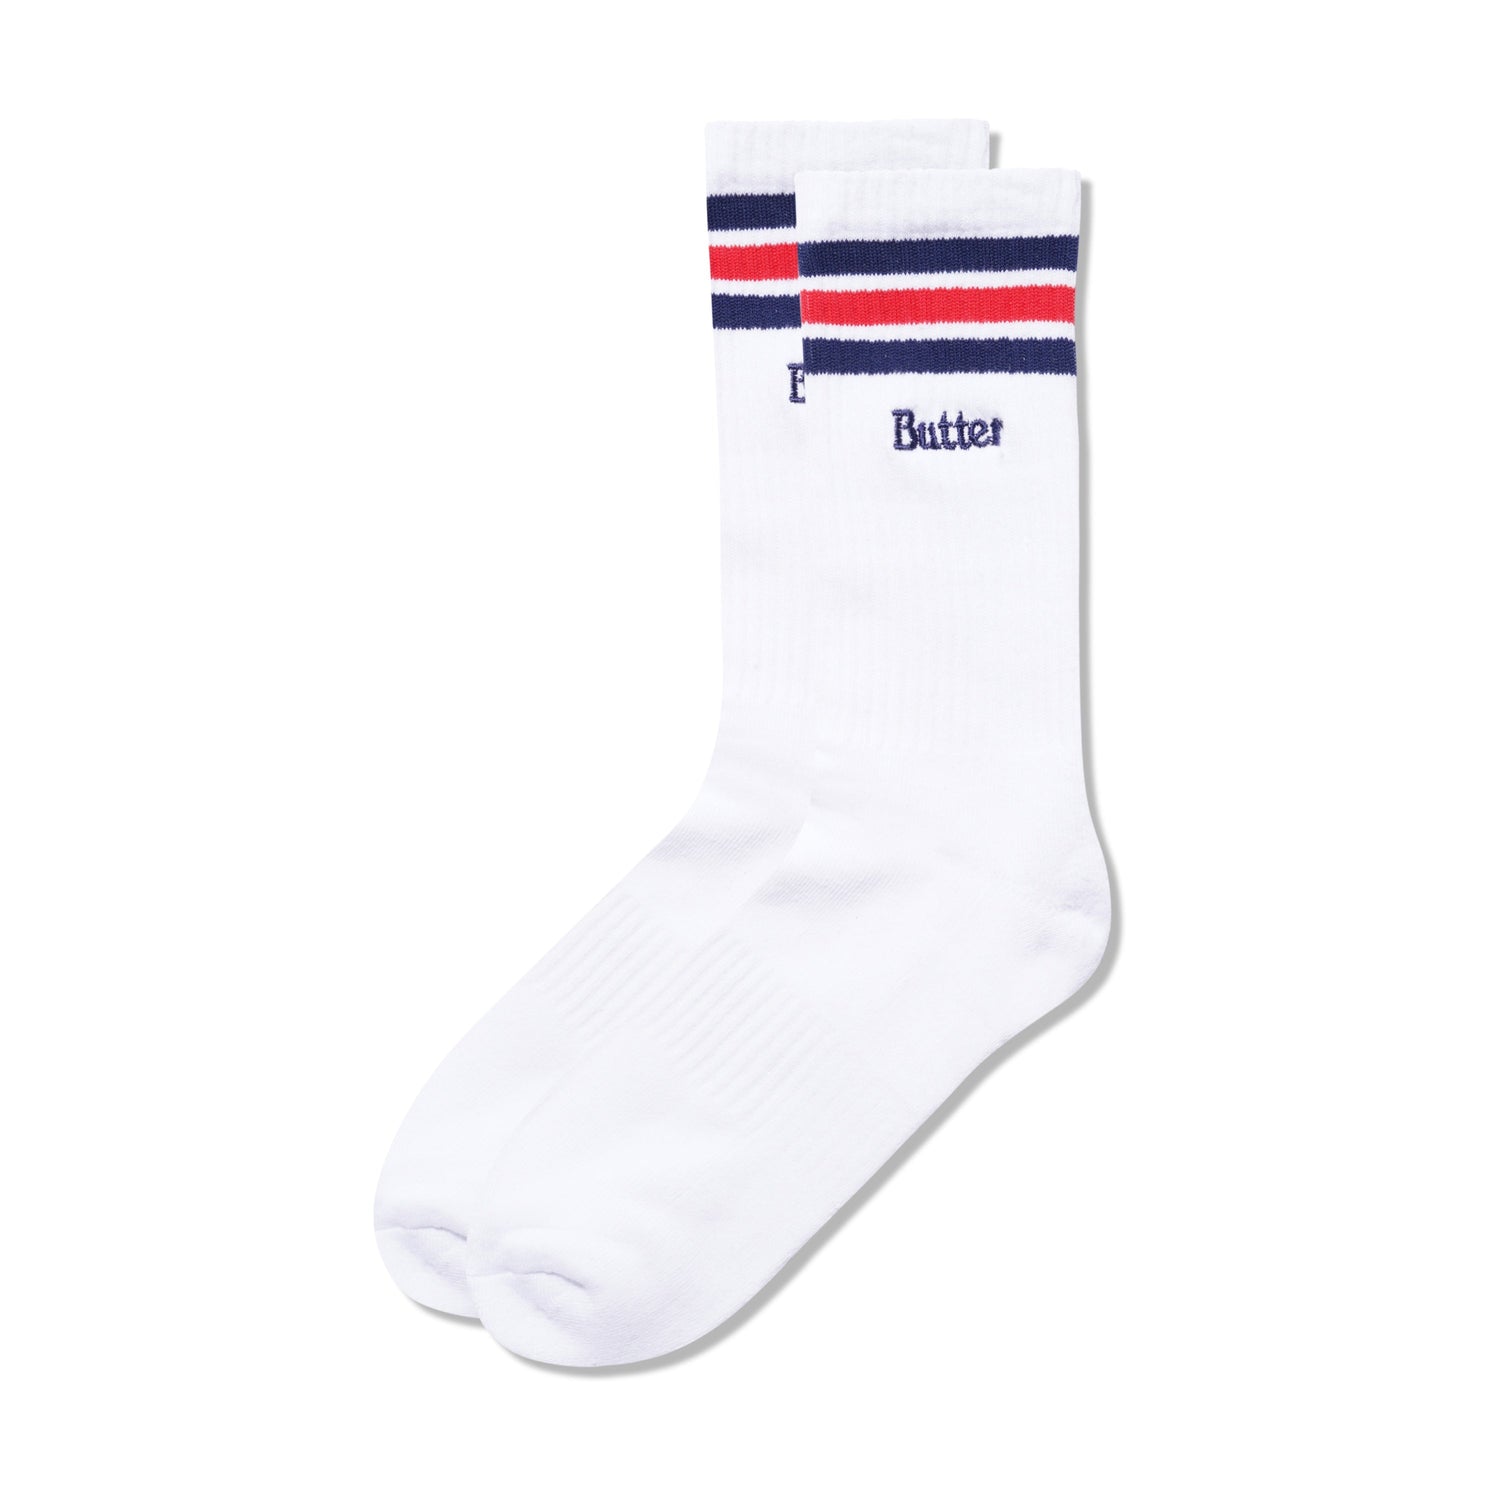 Stripe Socks, White